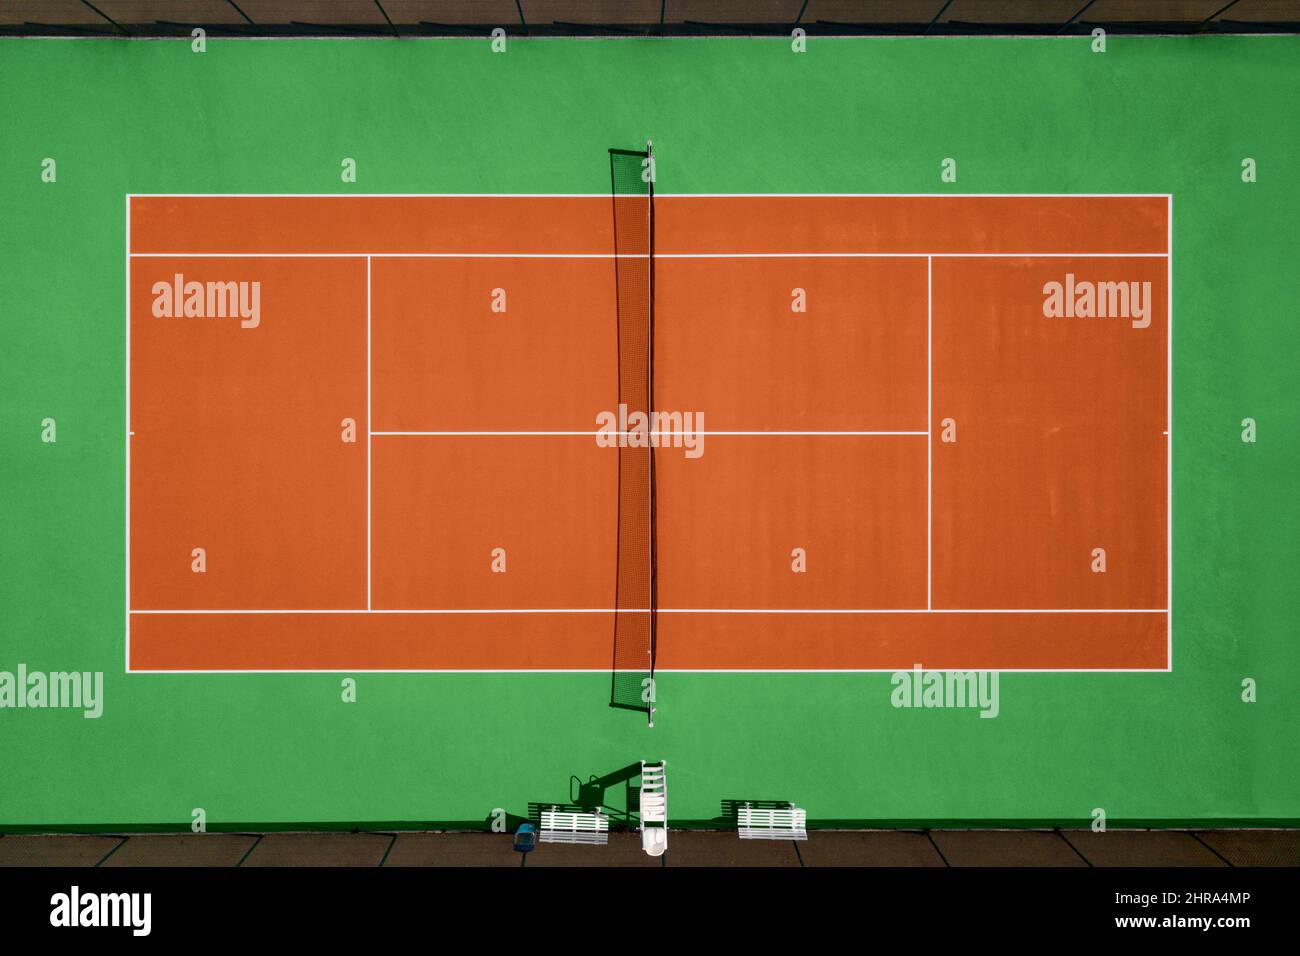 Vista aerea del campo da tennis arancione e verde. Foto Stock